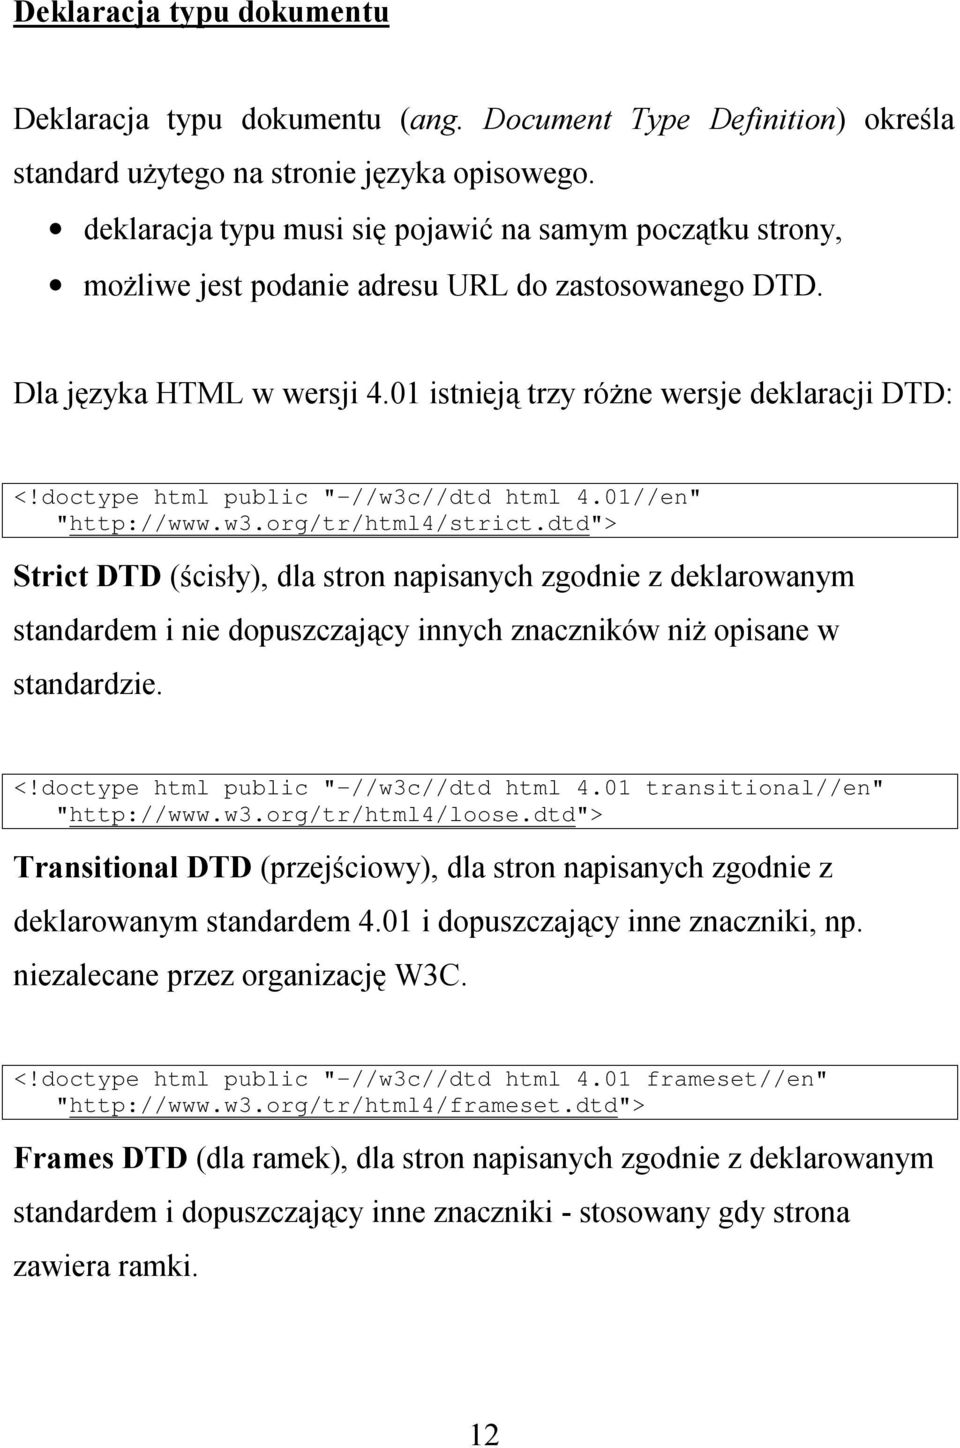 doctype html public "-//w3c//dtd html 4.01//en" "http://www.w3.org/tr/html4/strict.